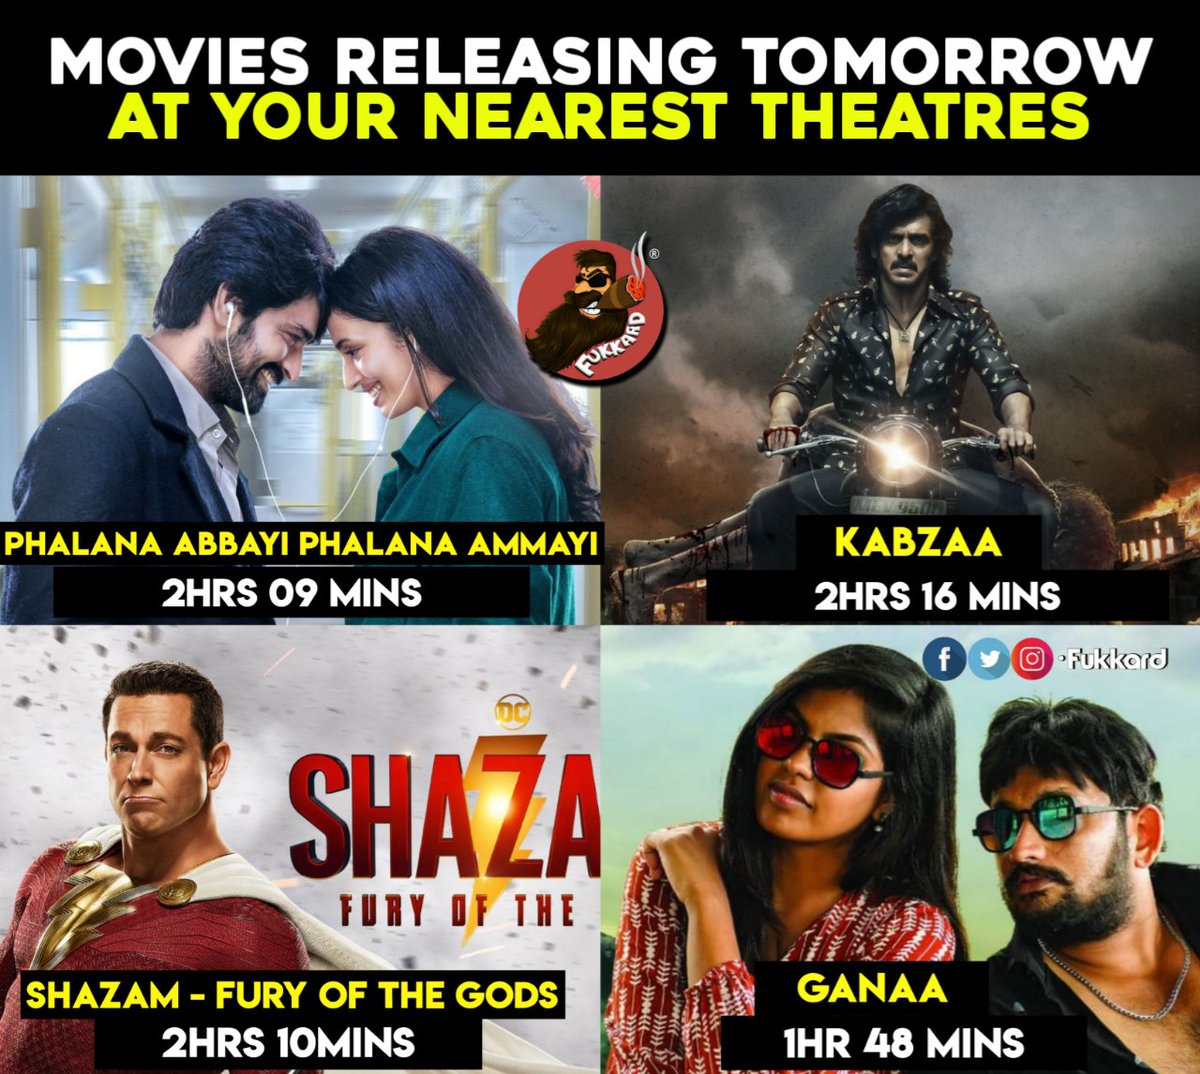 Tomorrow #Telugu Releases.
What's your pick?

#PhalanaAbbayiPhalanaAmmayi #Kabzaa #ShazamFuryOfTheGods 
#PAPA #Ganaa